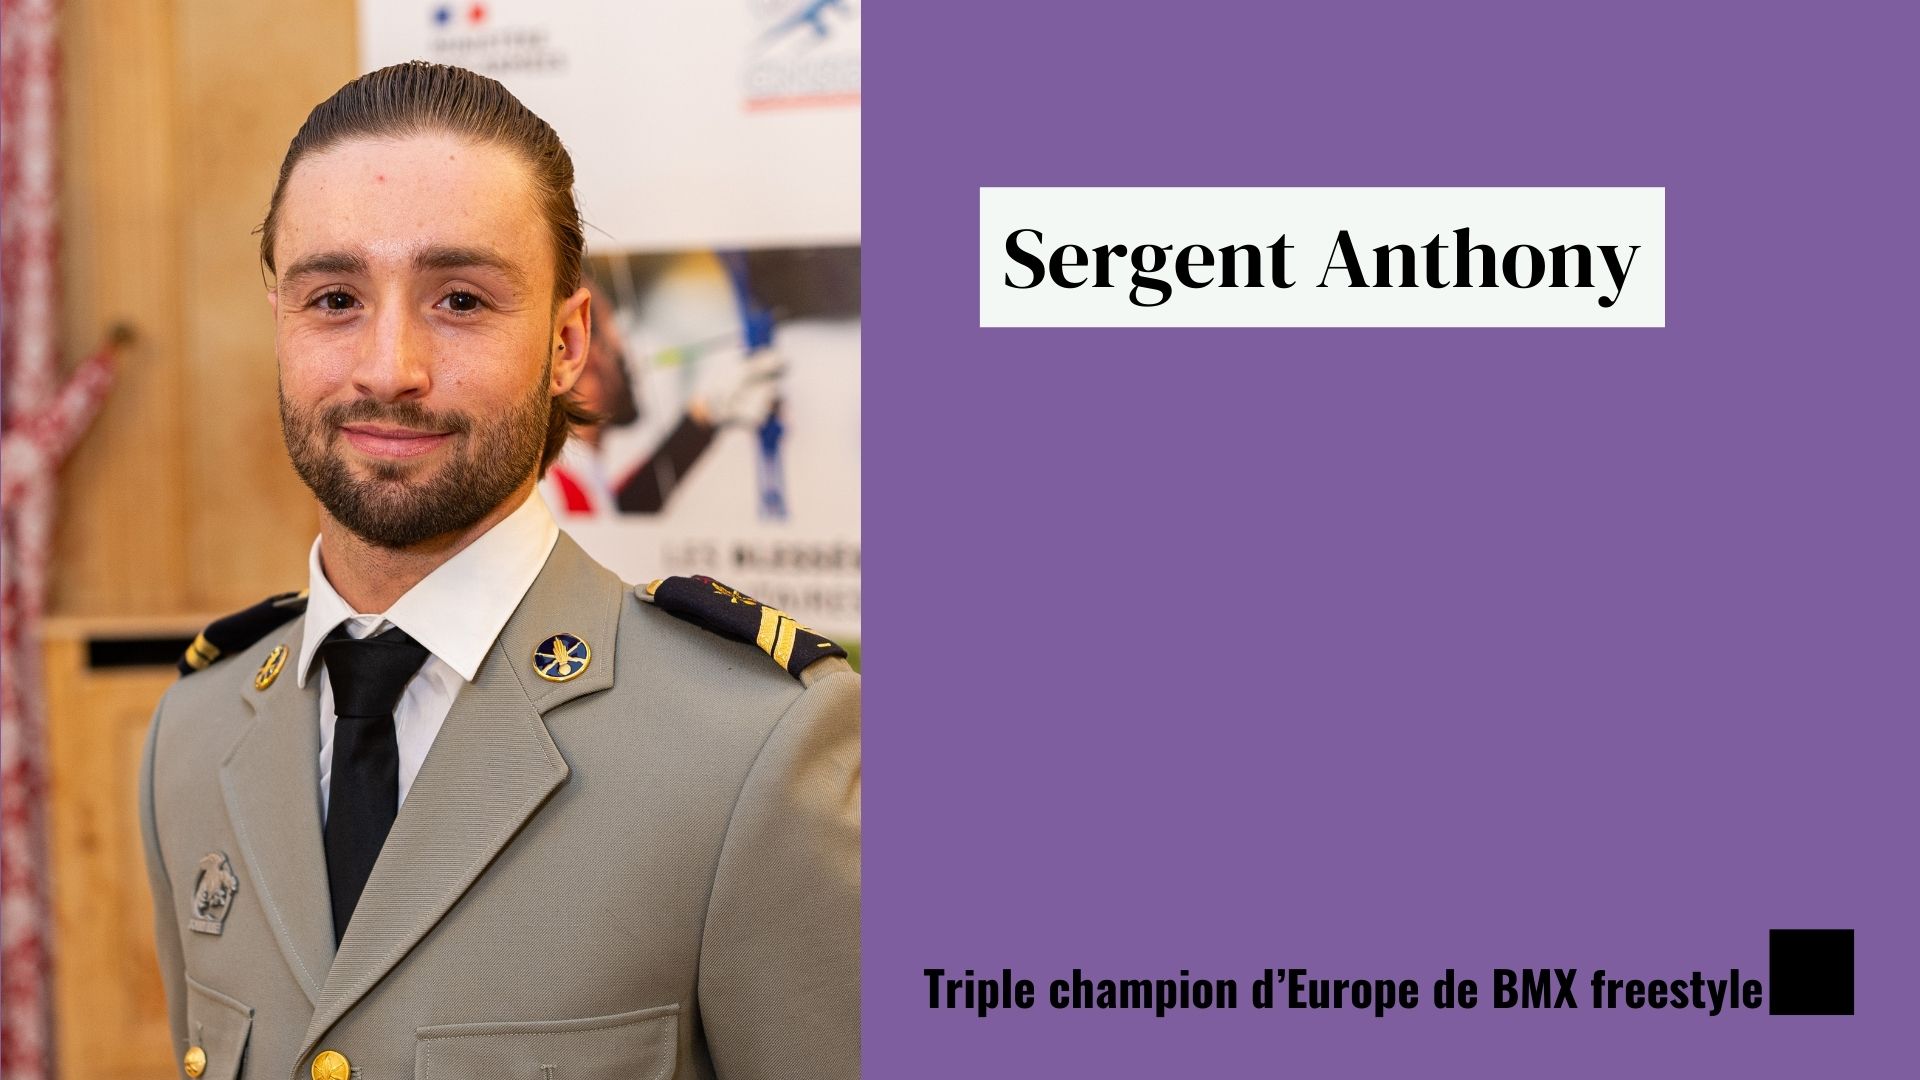 Sergent Anthony, triple champion d'Europe de BMX freestyle